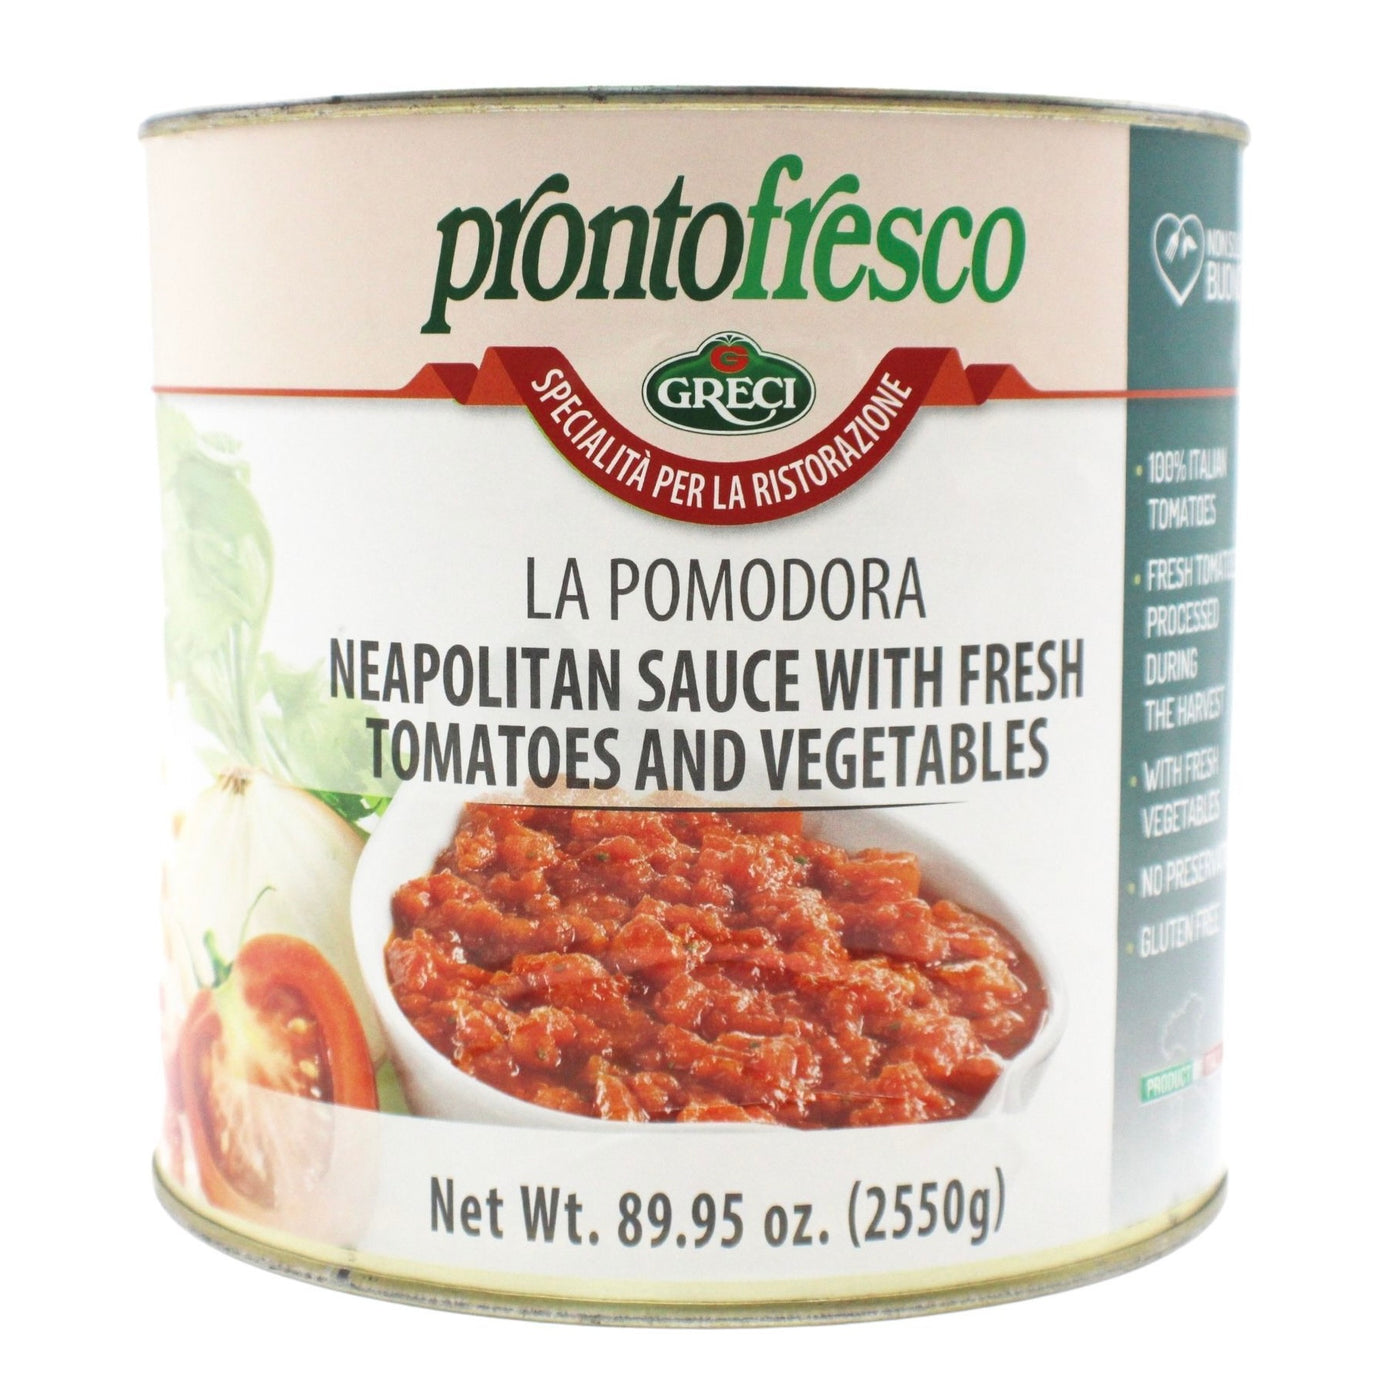 Tomato Sauce with Fresh Vegetables | PRONTO FRESCO | 2.55kg